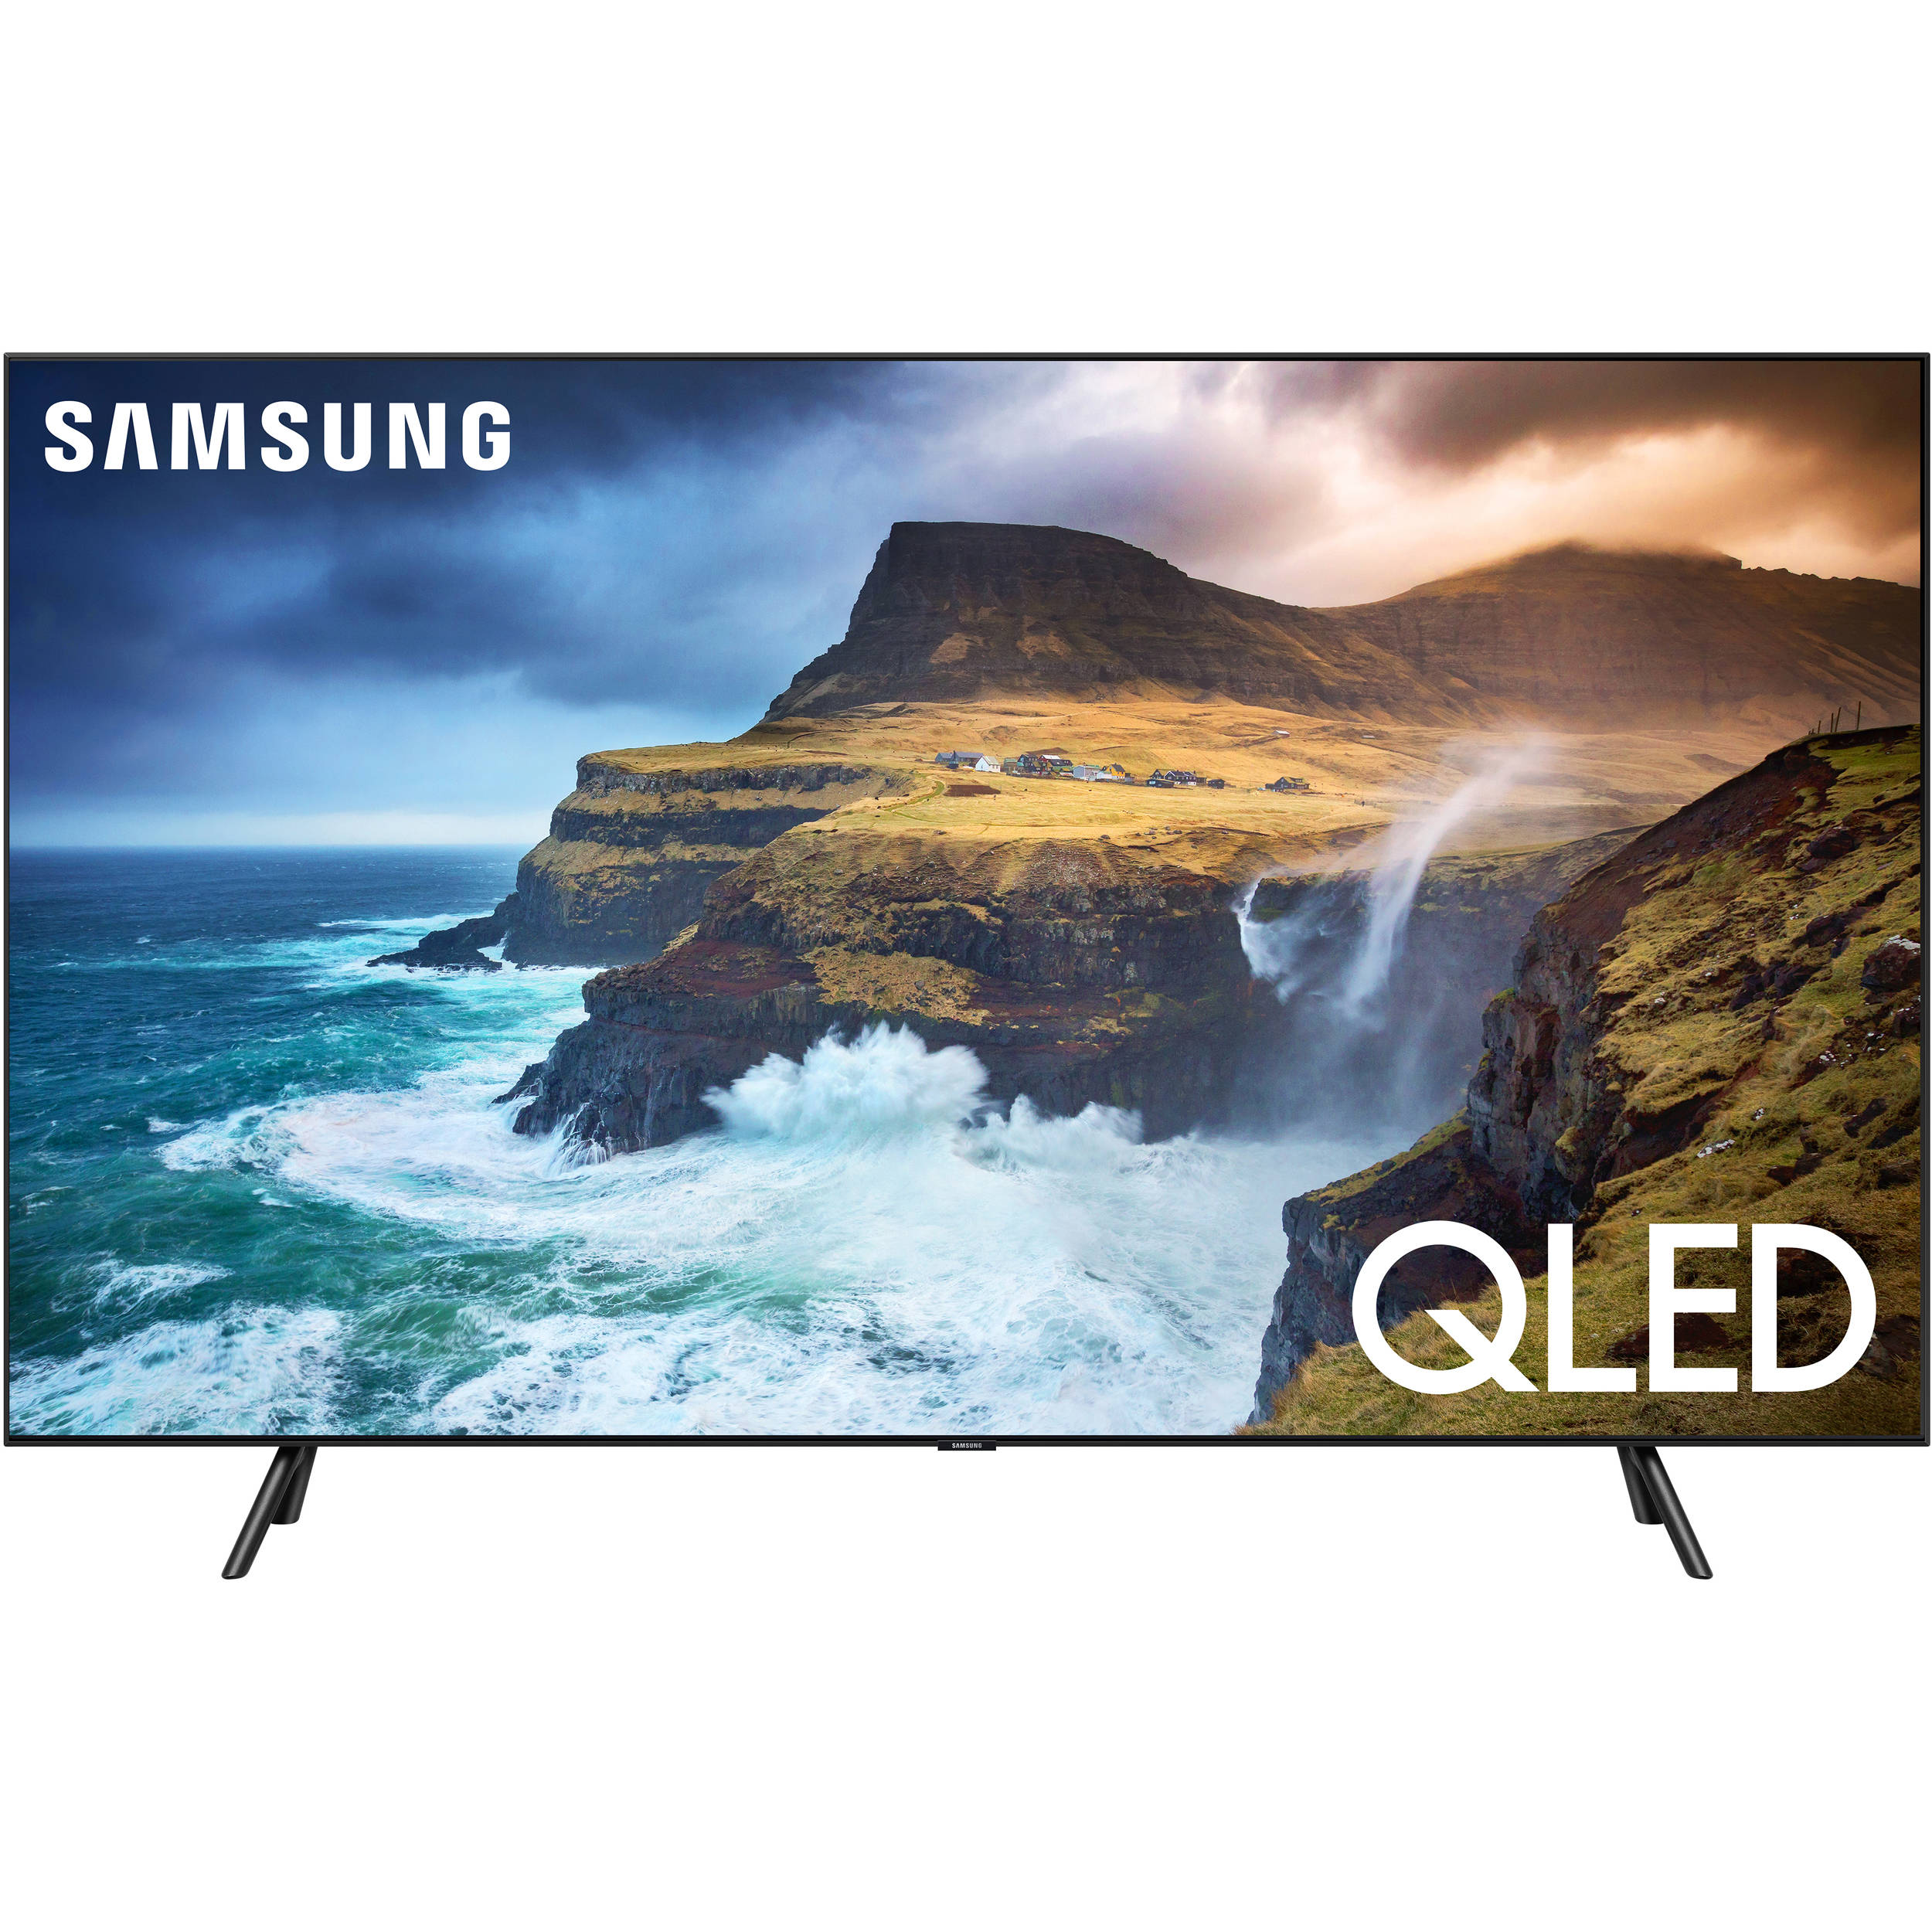 Samsung 65 Class Ru7100 Smart 4k Uhd Tv 2019 Reviews Várias Classes 